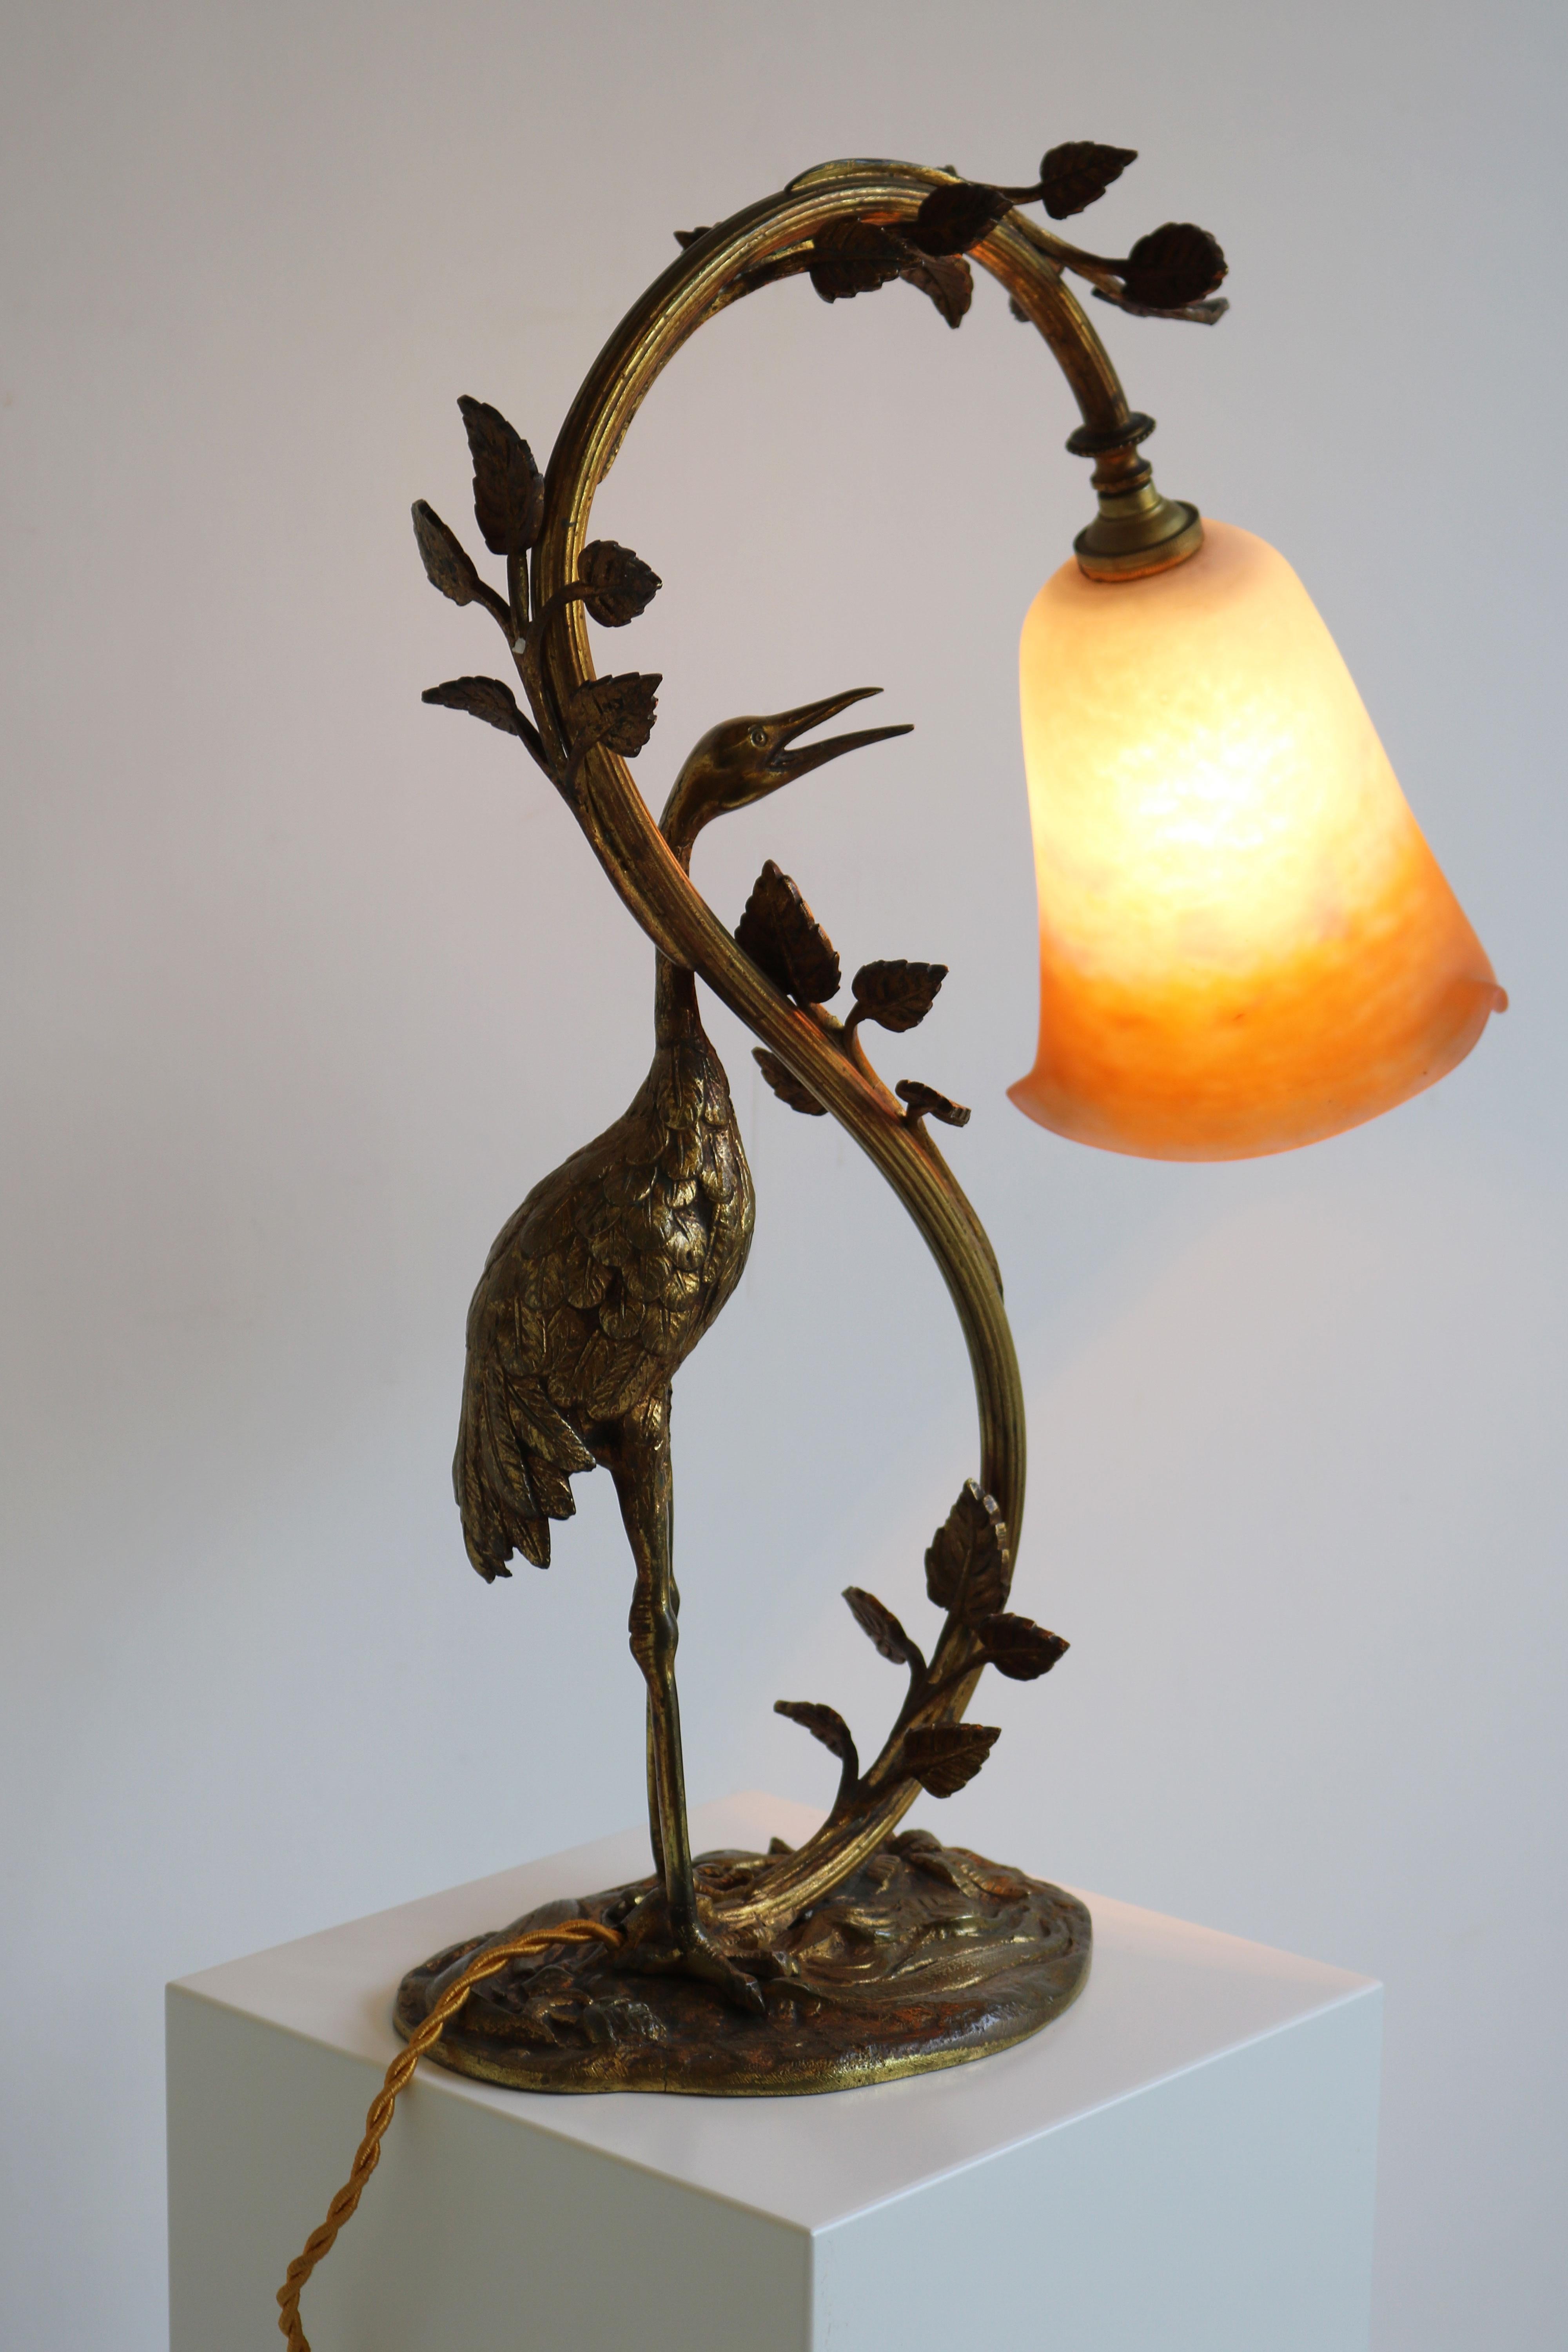 Antique French Art Nouveau Table Lamp Heron by Degue 1920 Pate De Verre Bronze  In Good Condition For Sale In Ijzendijke, NL